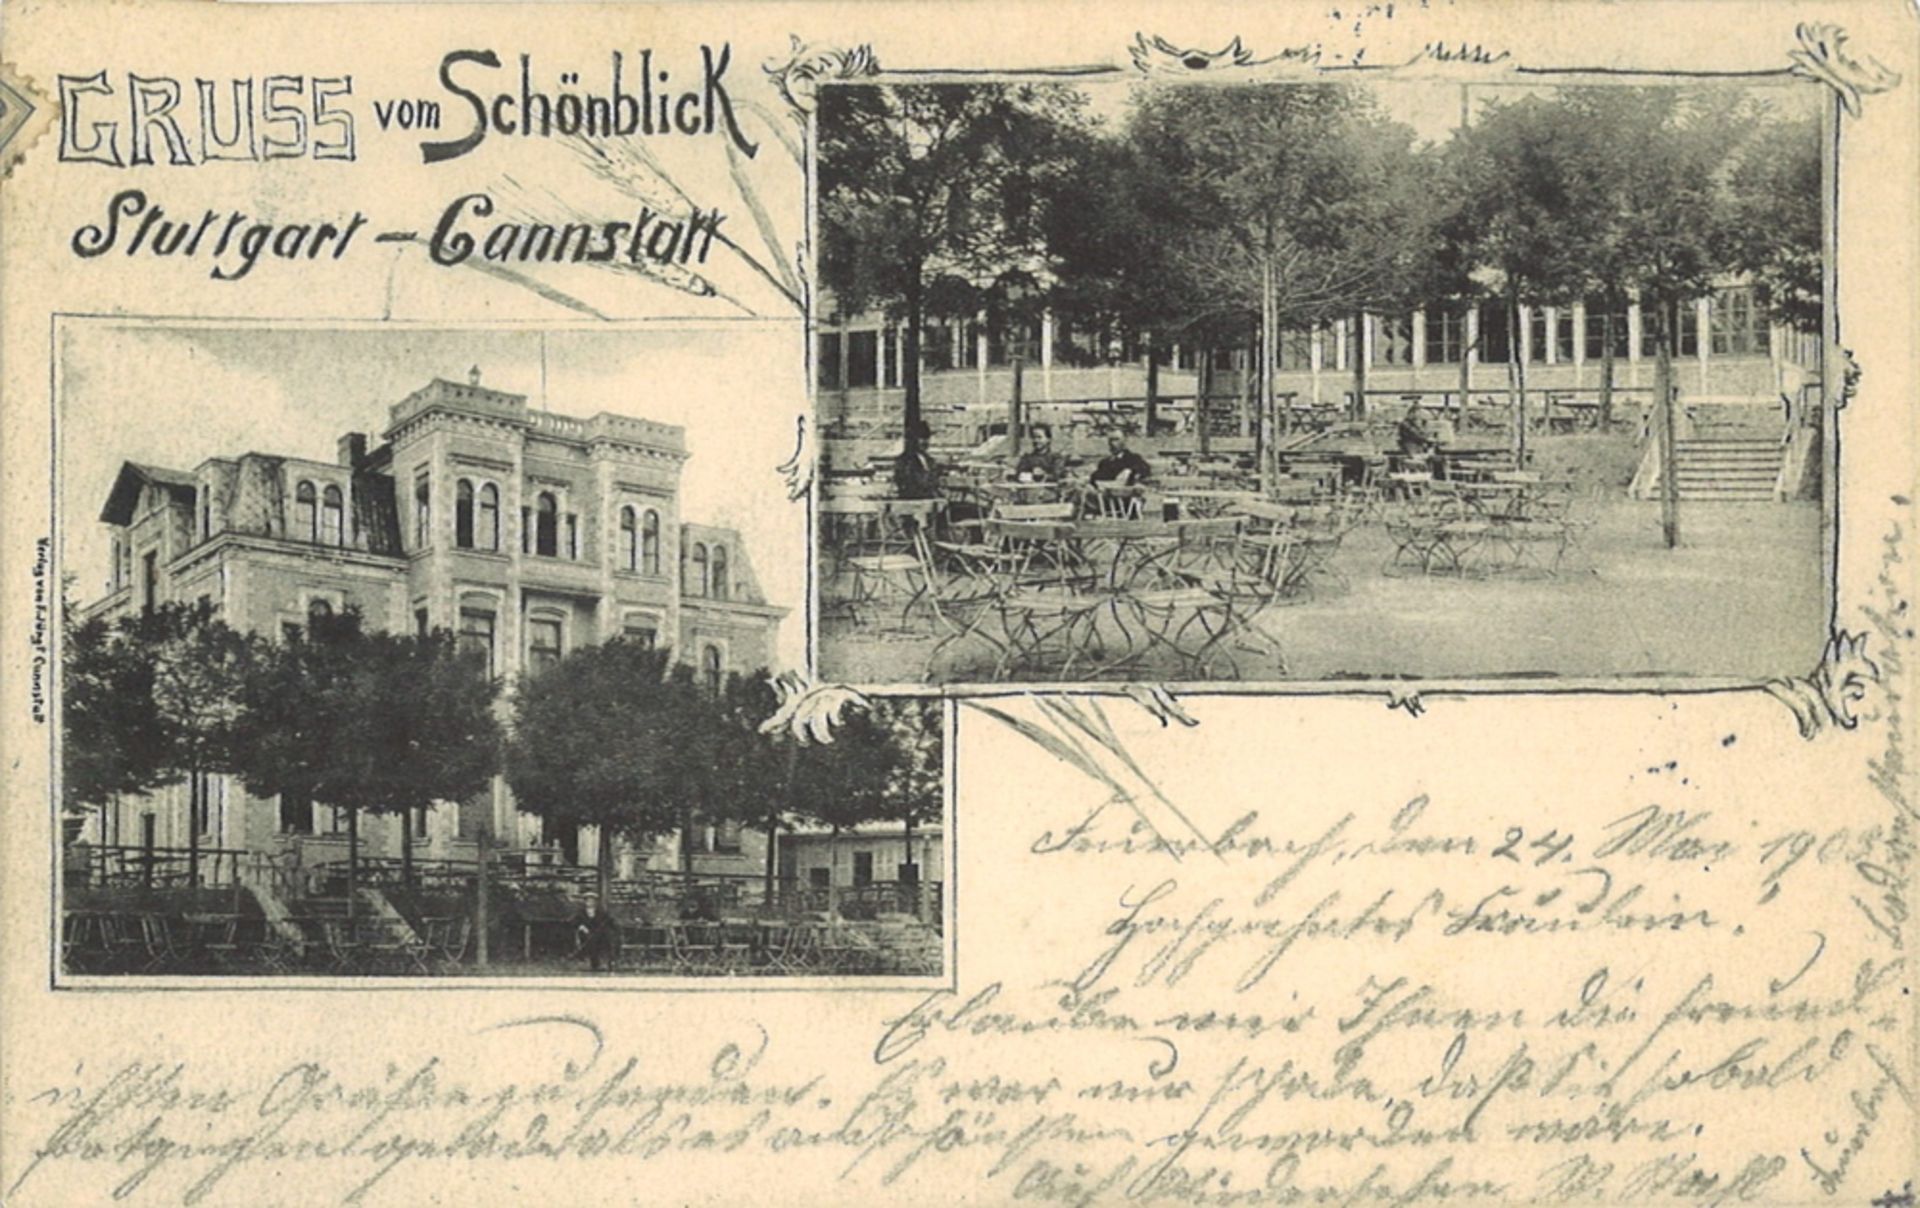 Postkarte "Gruss vom Schönblick" Stuttgart - Cannstatt, gelaufen